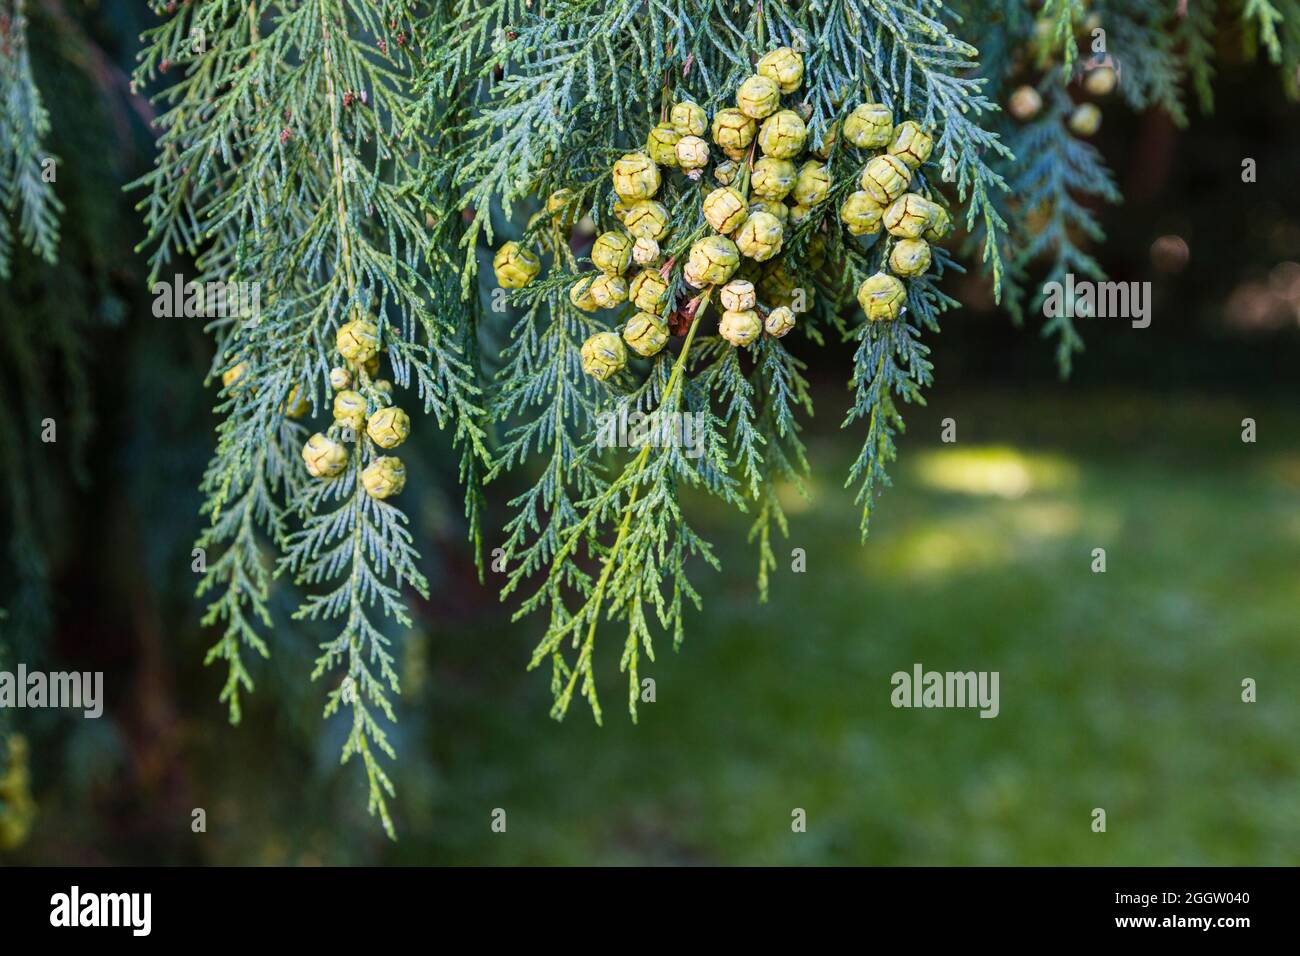 Lawson cypress, Port Orford cedar (Chamaecyparis lawsoniana), fruits of Lawson cypress Stock Photo